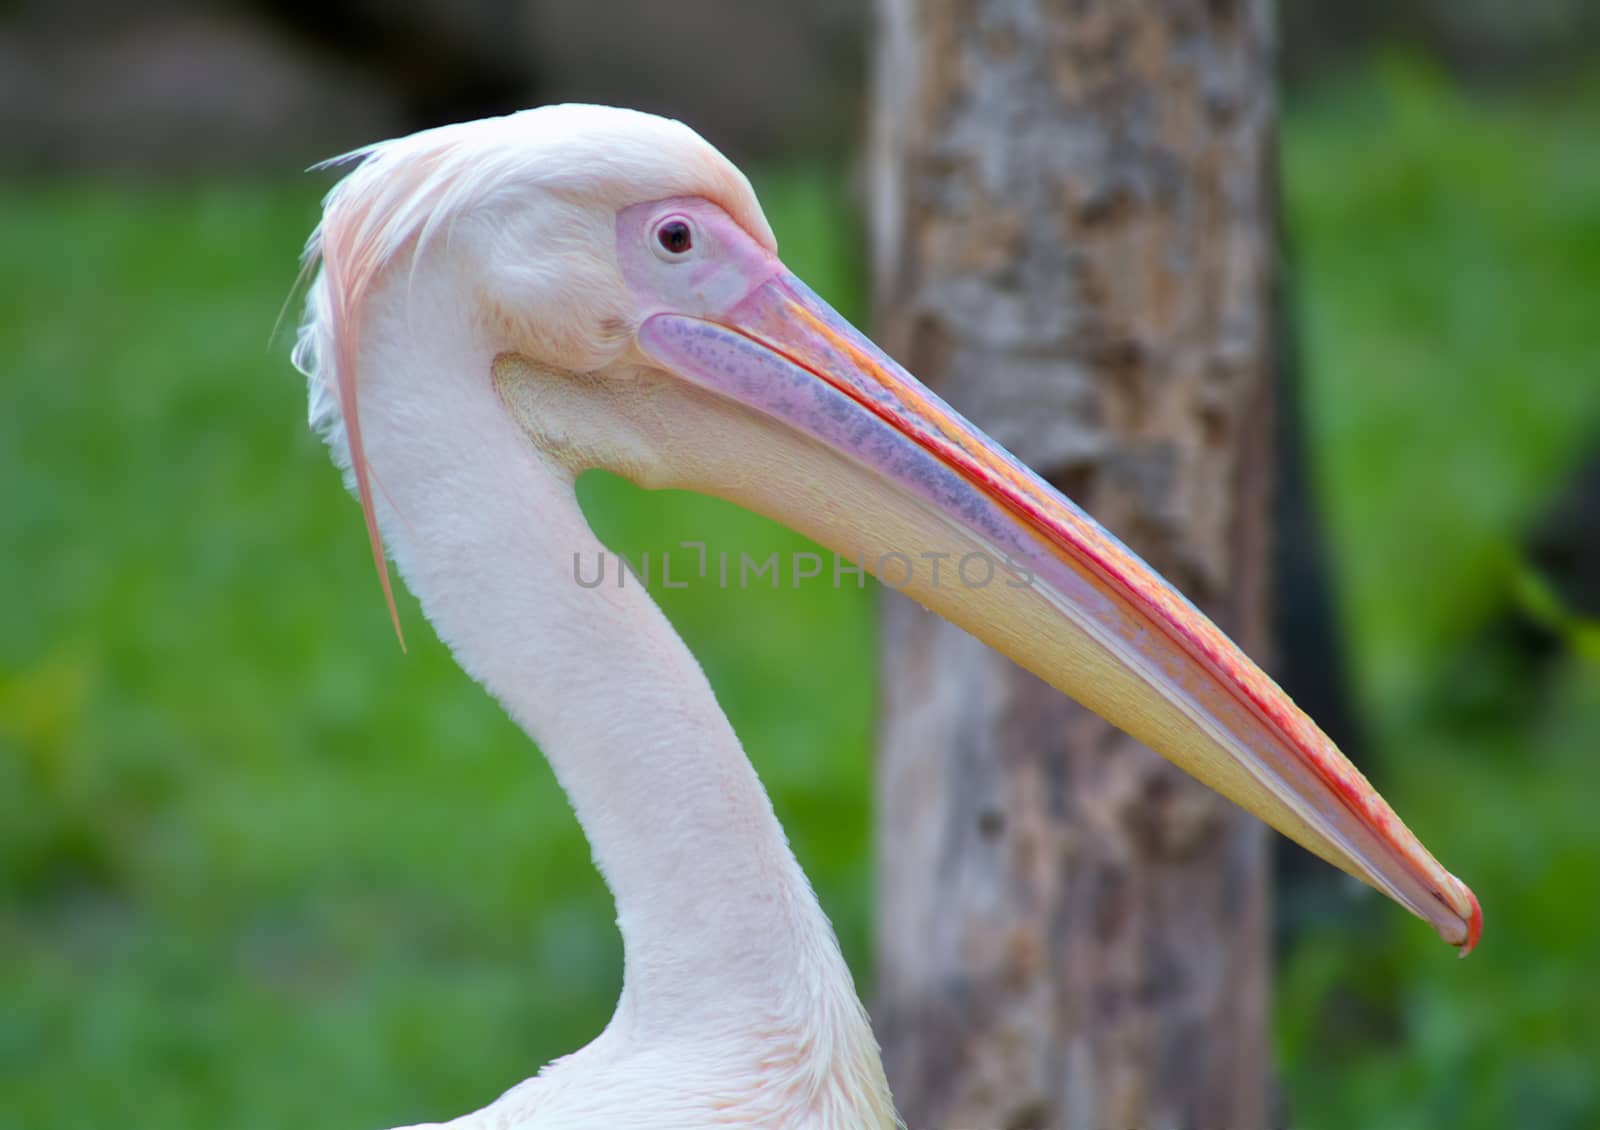 Spot-billed pelican or great white pelican by rkbalaji